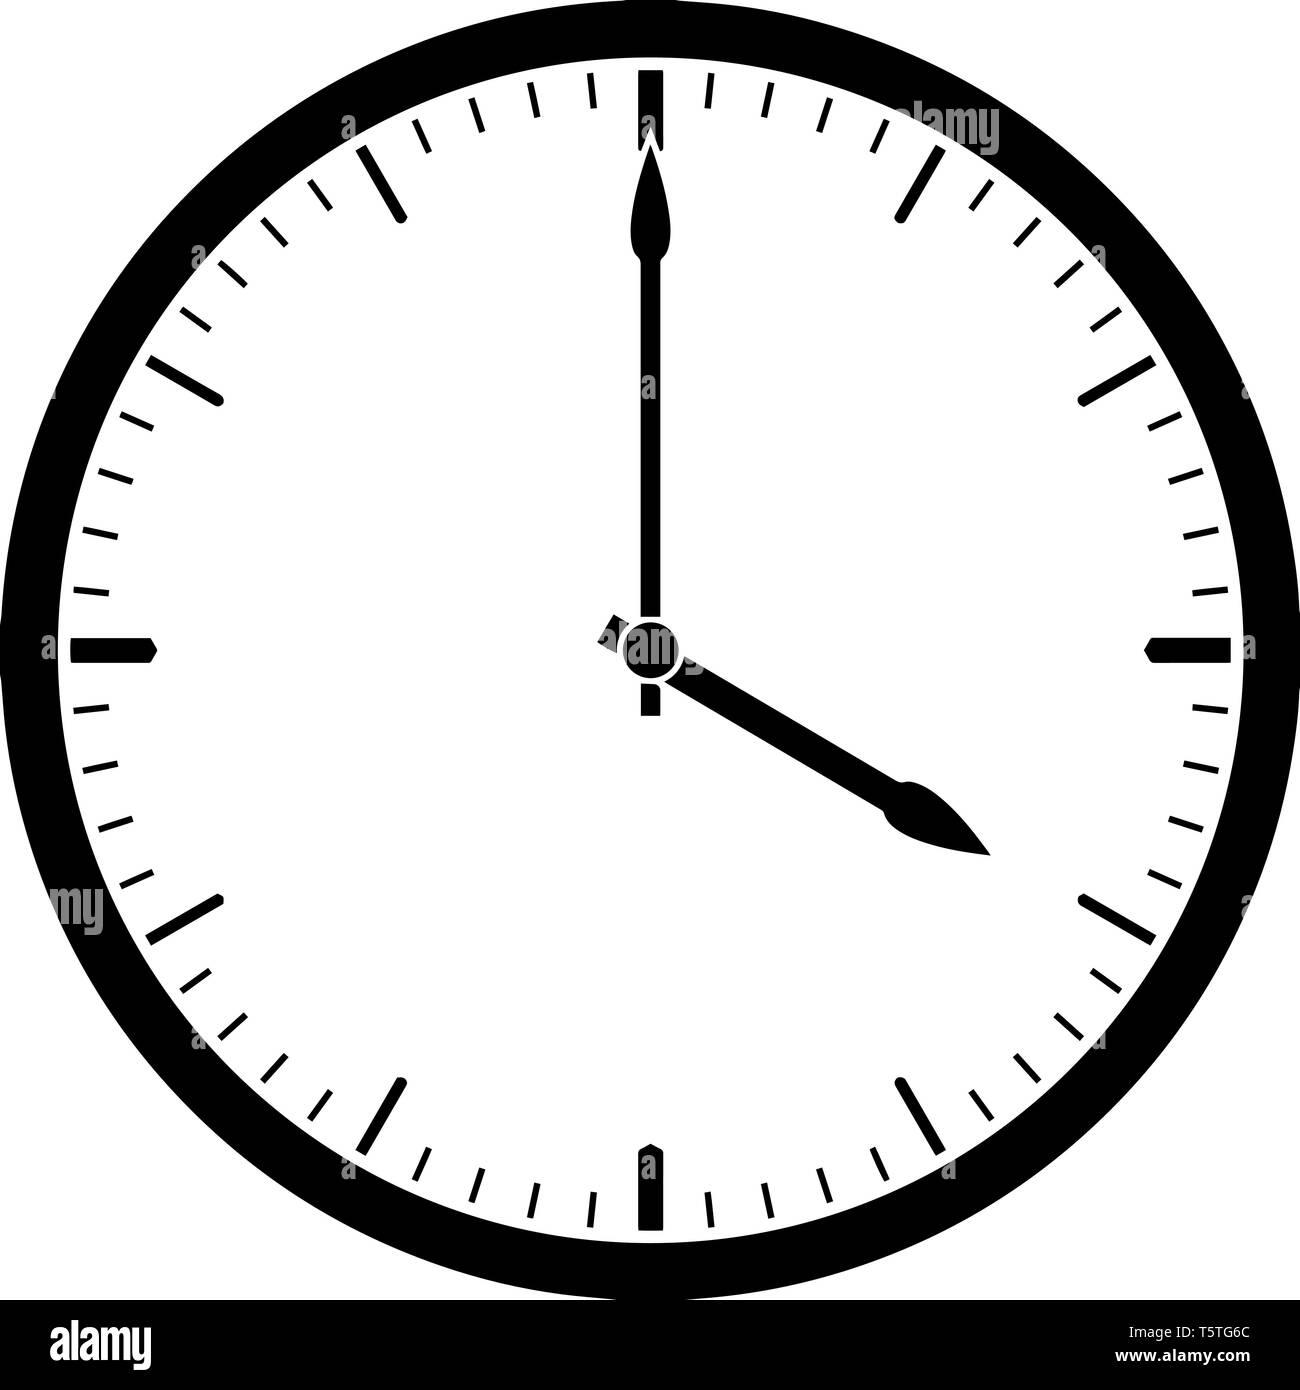 Orologio 4 00 che è un orologio rotondo con trattini che indica il tempo di 4 ora e 00 minuti, vintage disegno della linea di incisione o illustrazione. Illustrazione Vettoriale